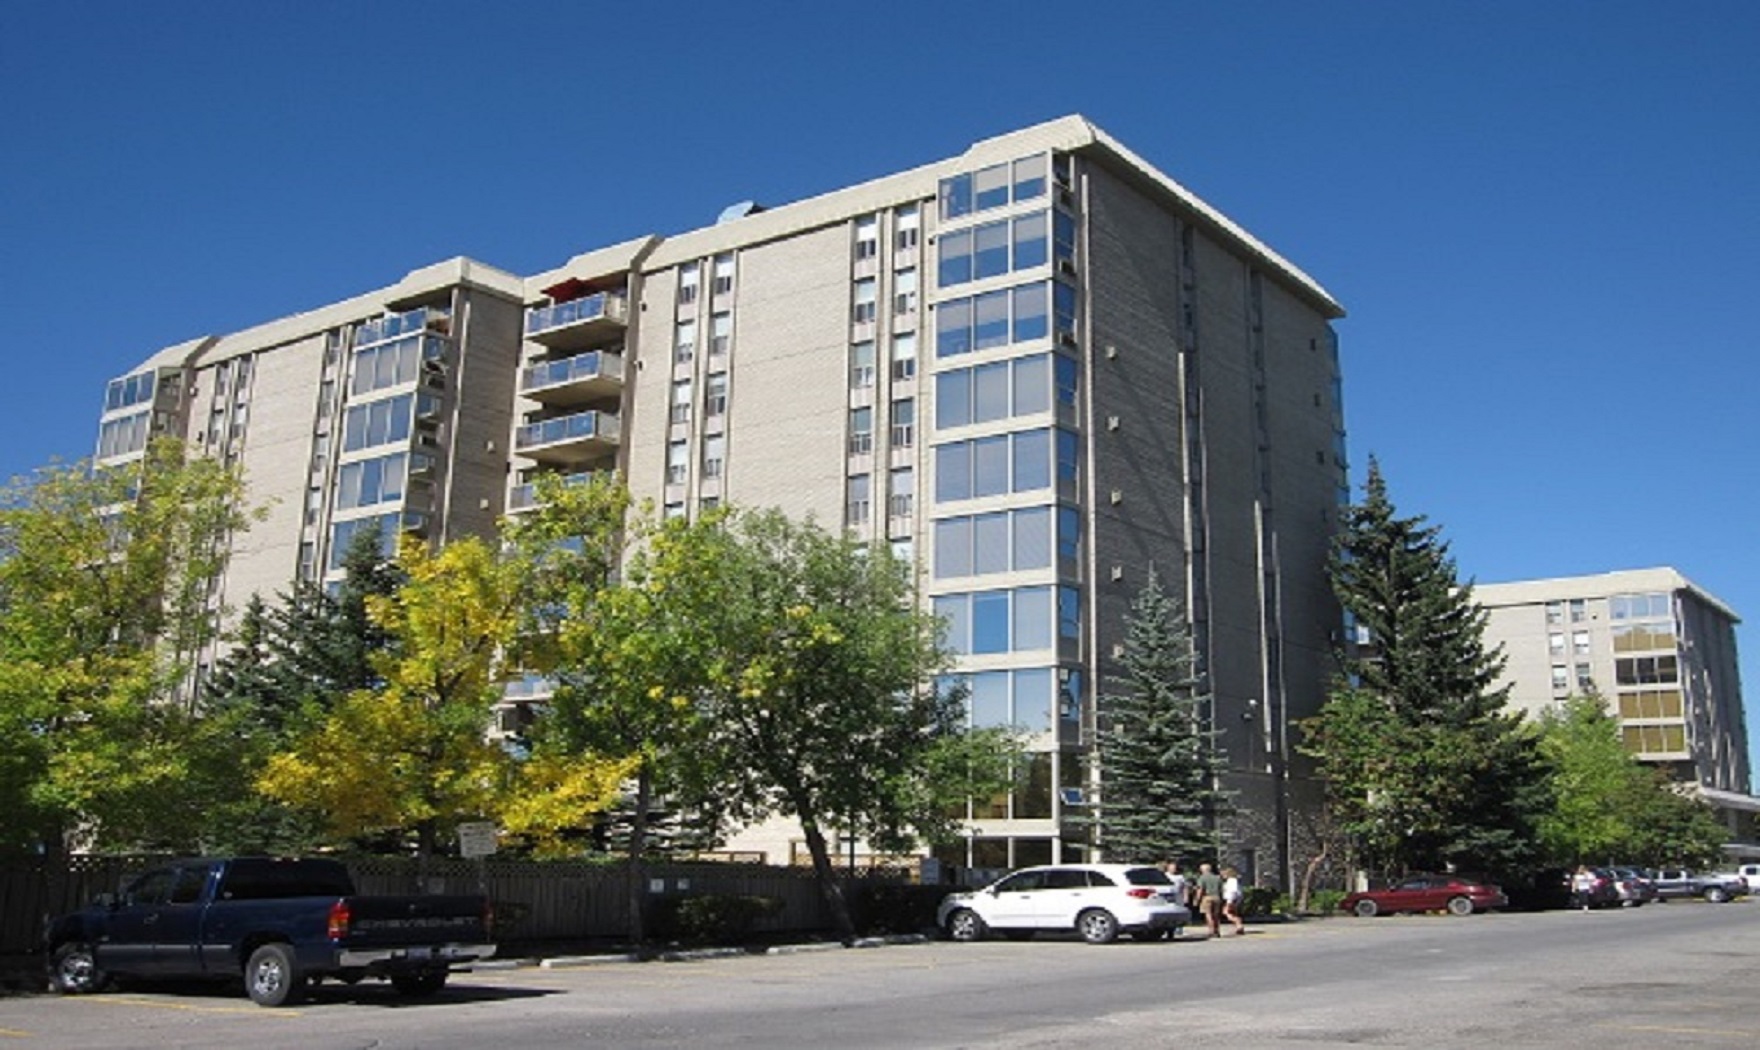 Condominium Common Area Cleaning Services, Calgary